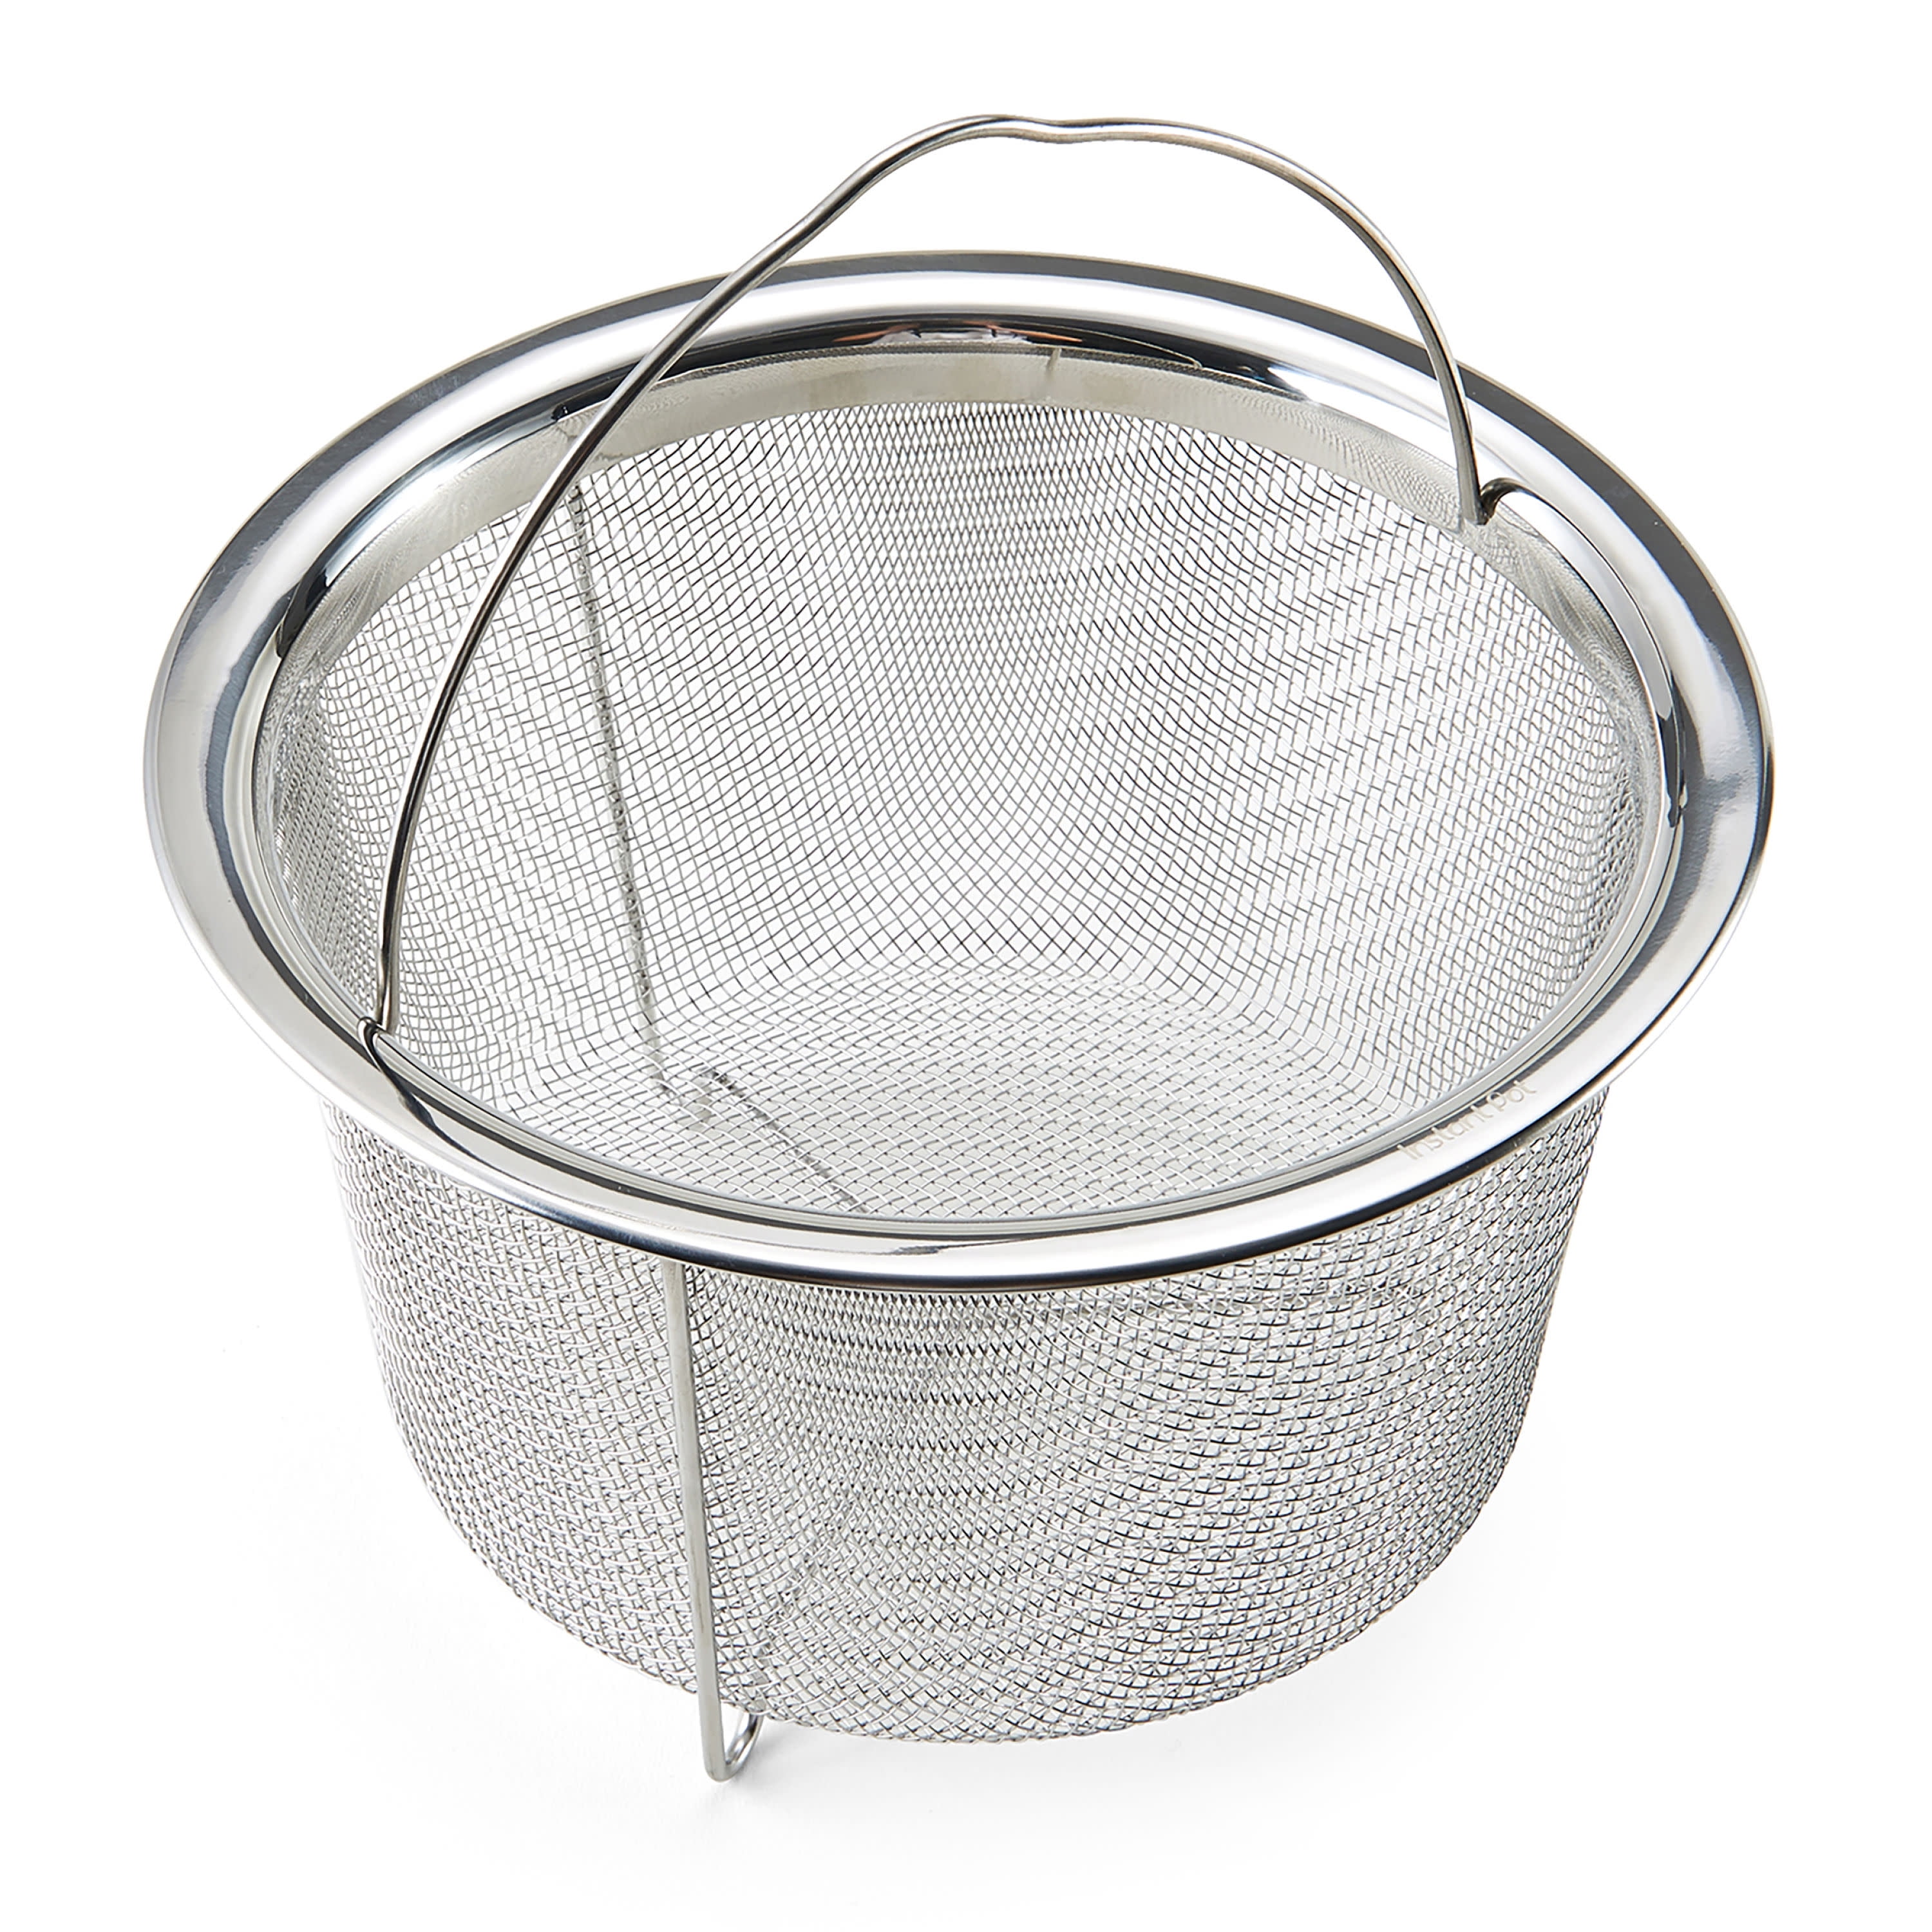 Instant Pot Large Mesh Steamer Basket - Shop Cookers & Roasters at